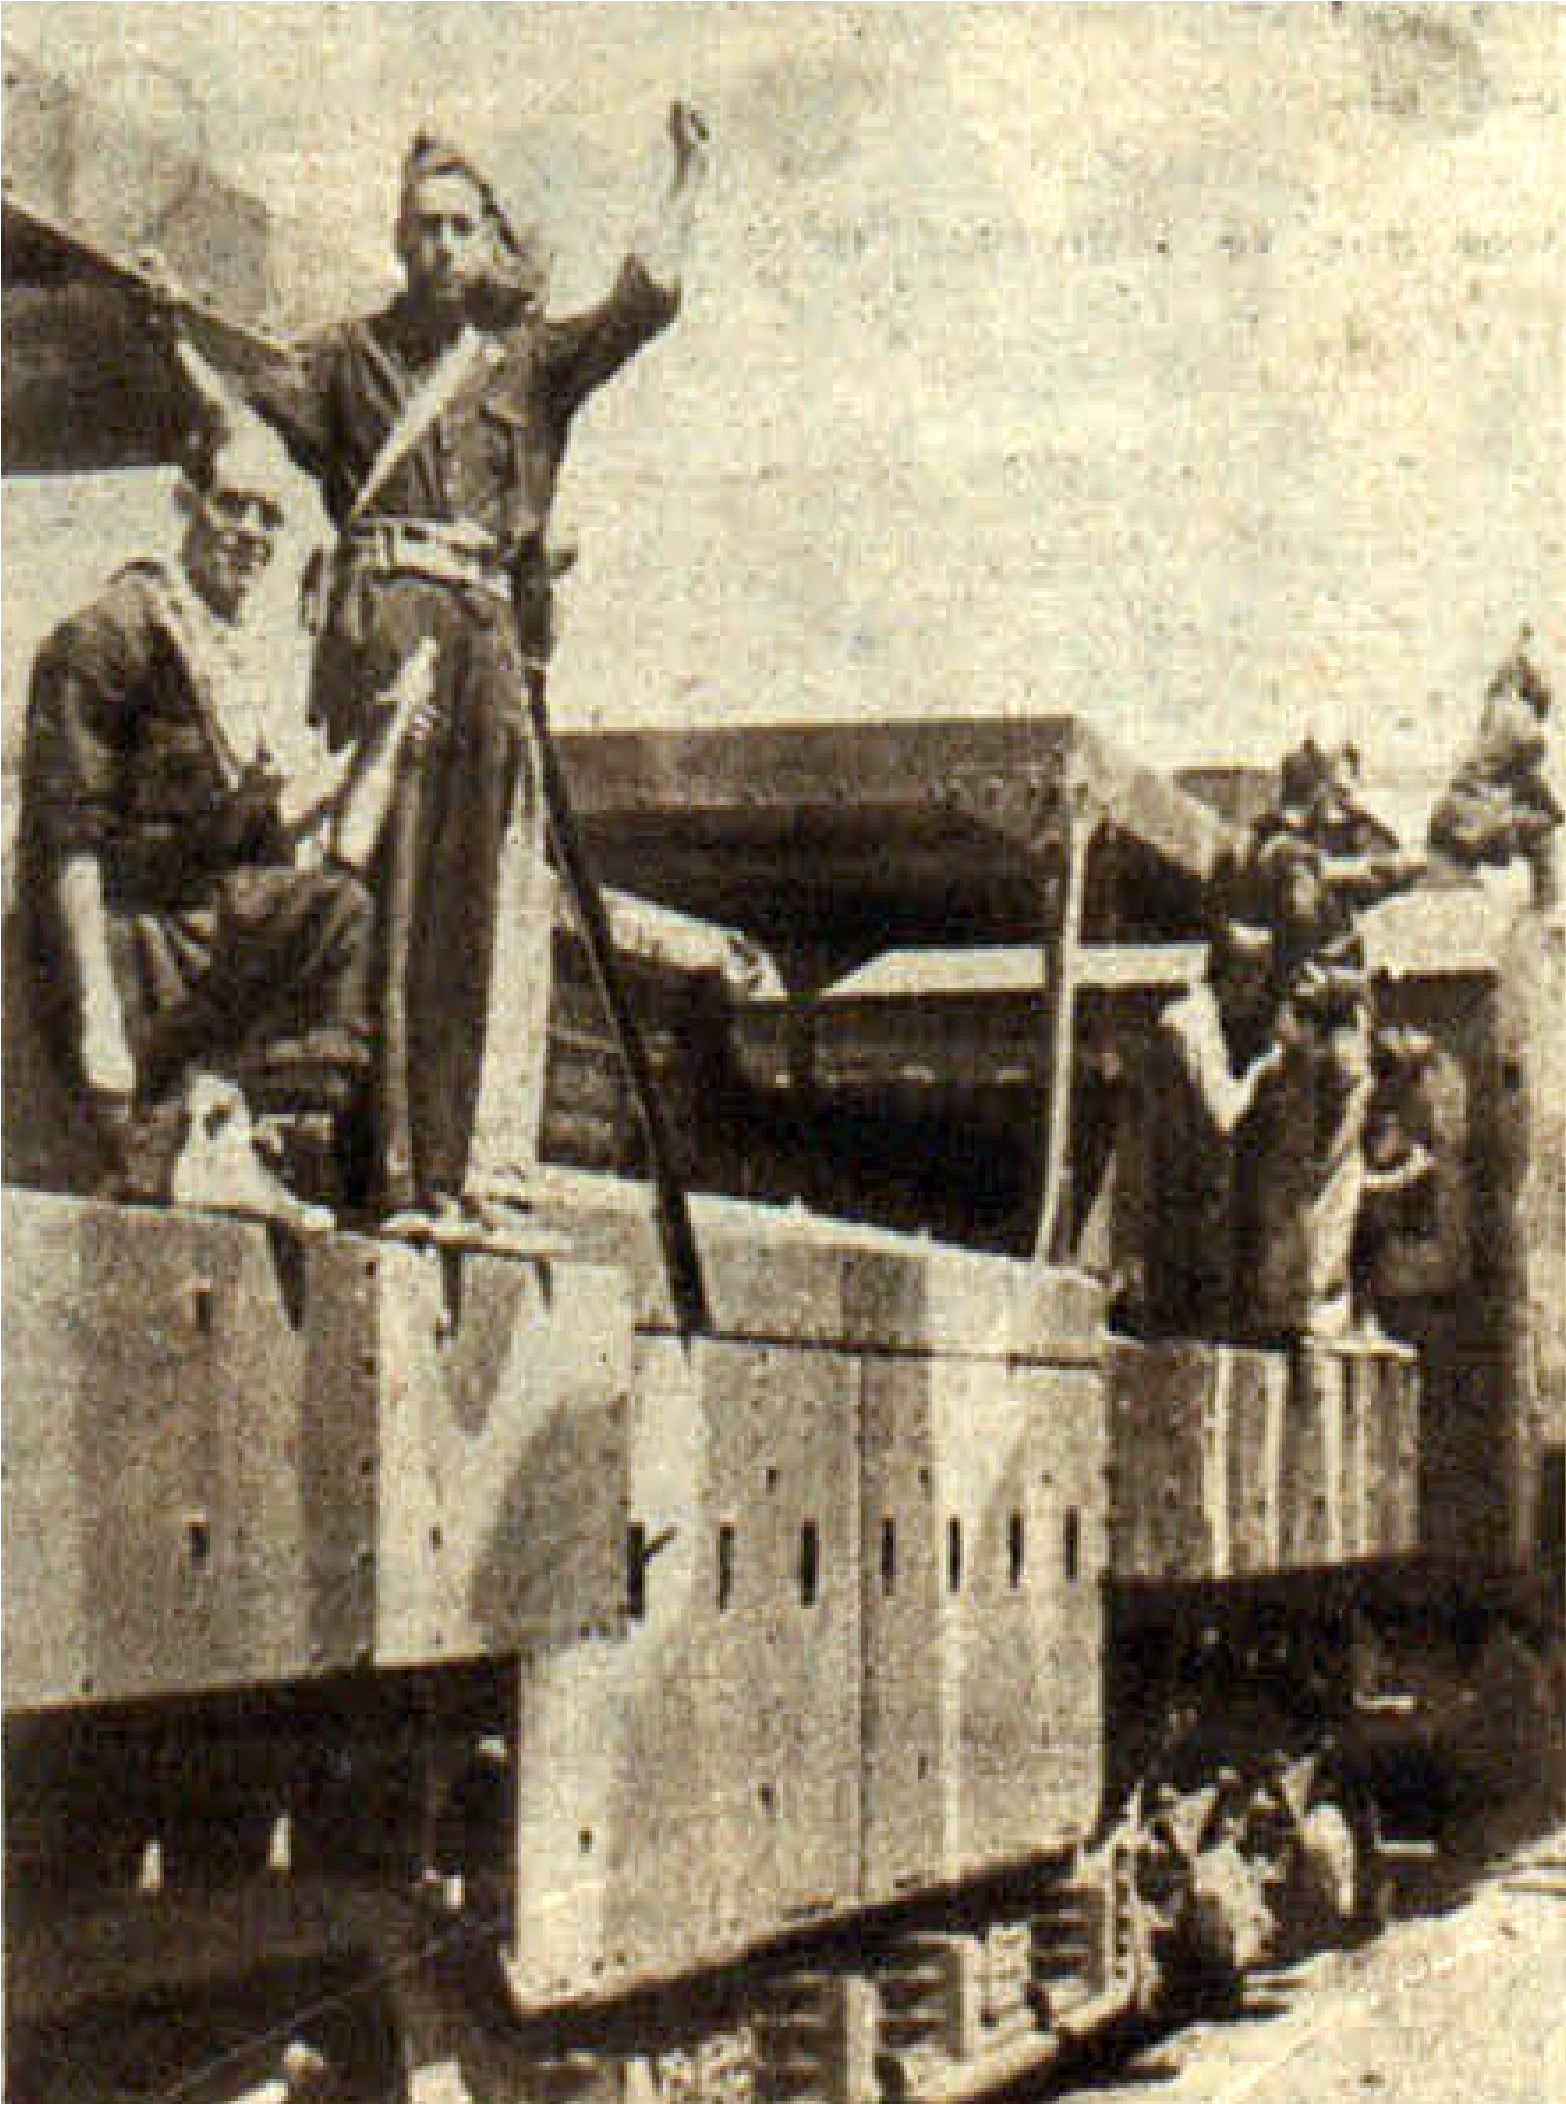 Imagen de un tren blindado y milicianos a principios de la guerra